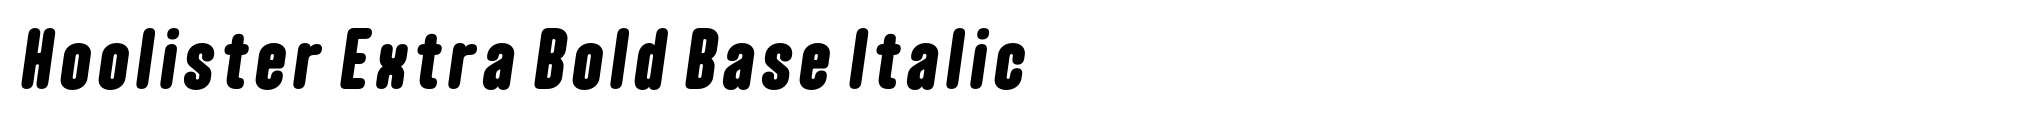 Hoolister Extra Bold Base Italic image